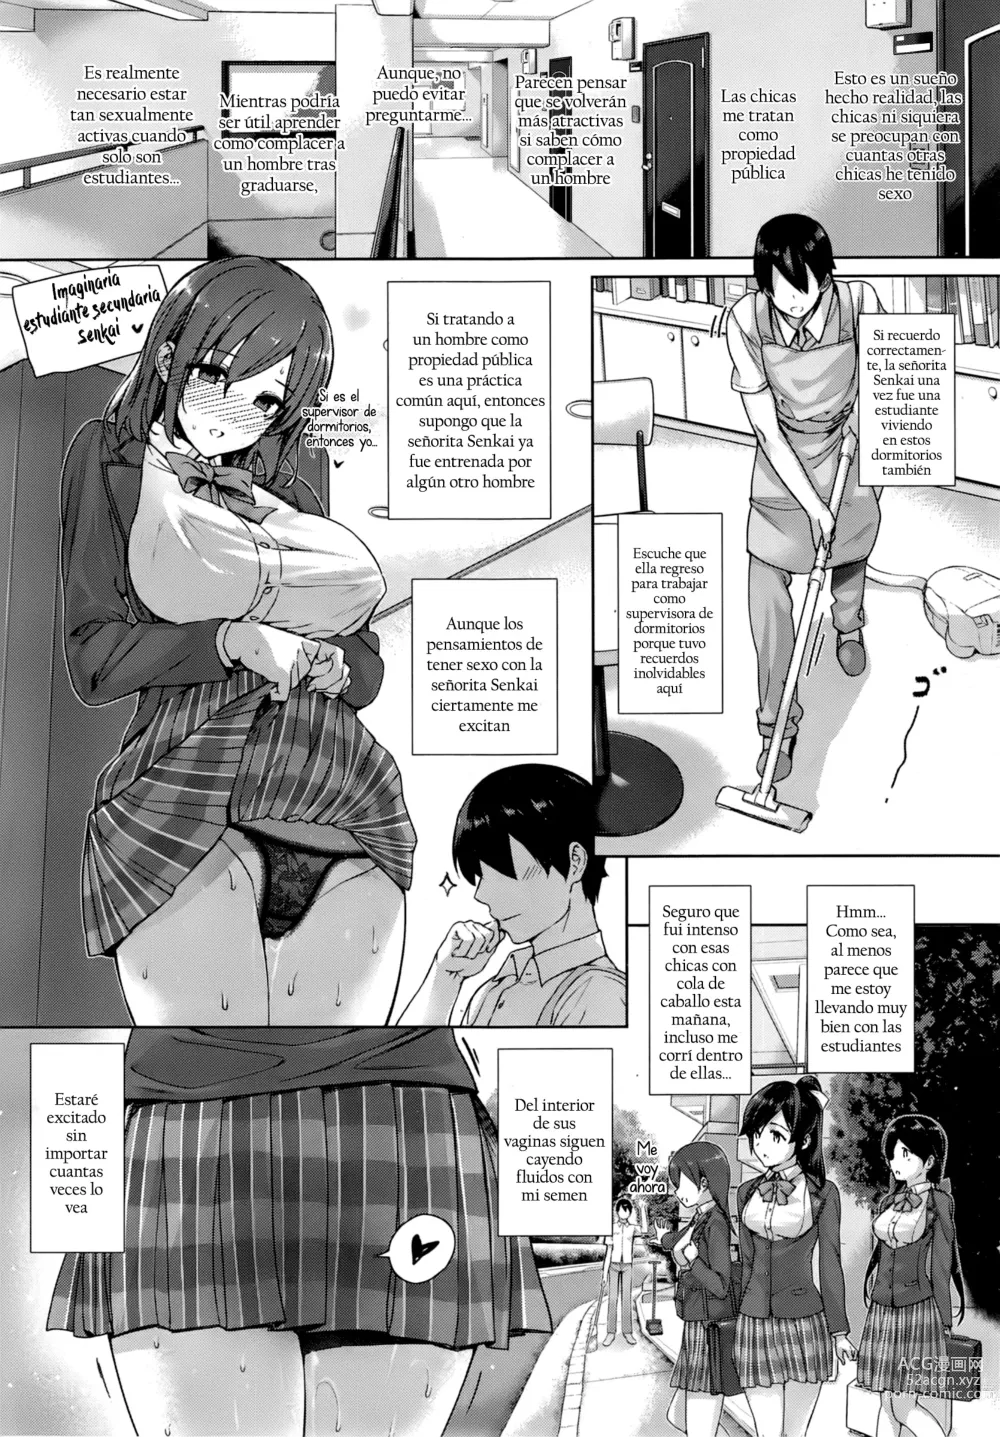 Page 3 of manga Amatsuka Gakuen no Ryoukan Seikatsu Ch. 1-2, 3.5-5.8